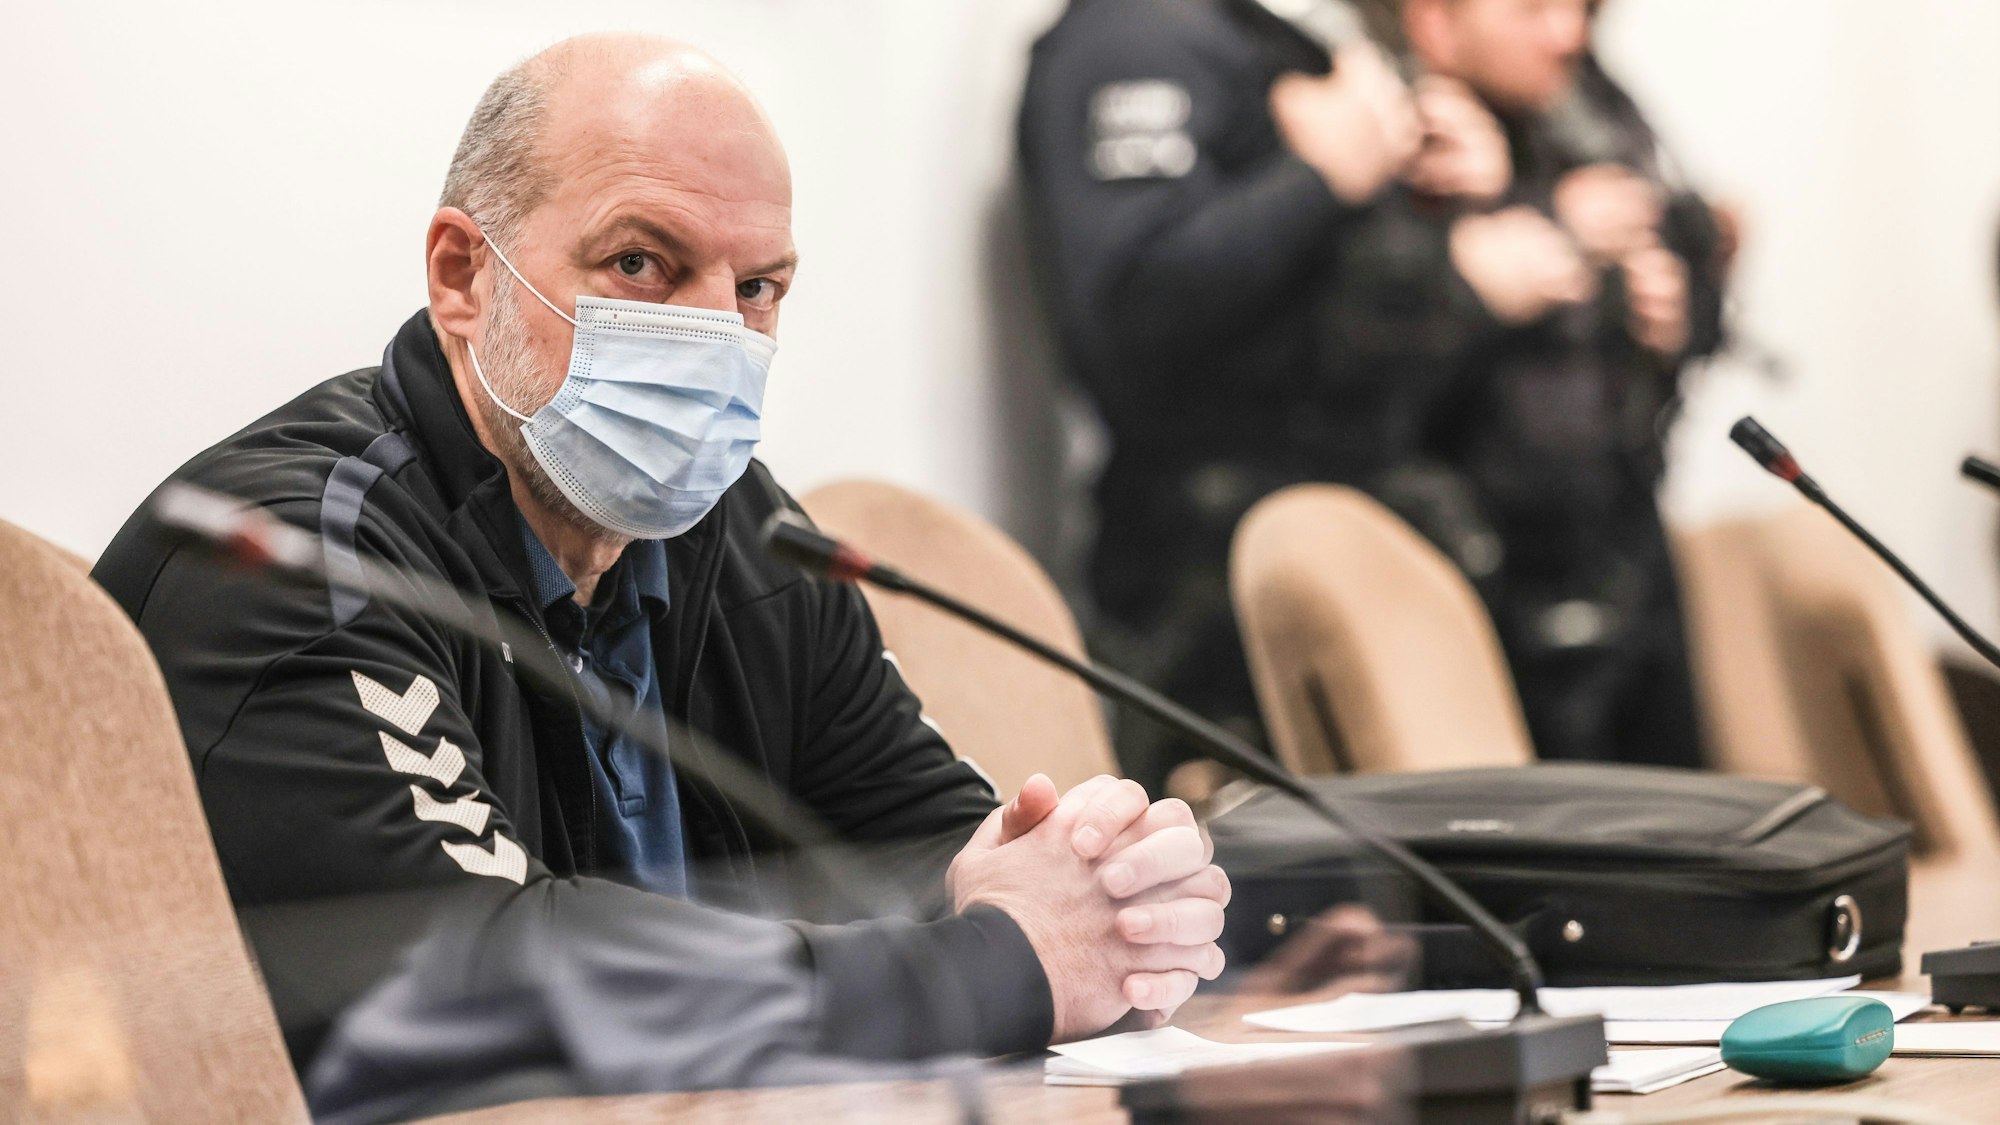 Der Reemtsma-Entführer Thomas Drach kurz vor dem Urteil im Januar auf der Anklagebank im Landgericht Köln.